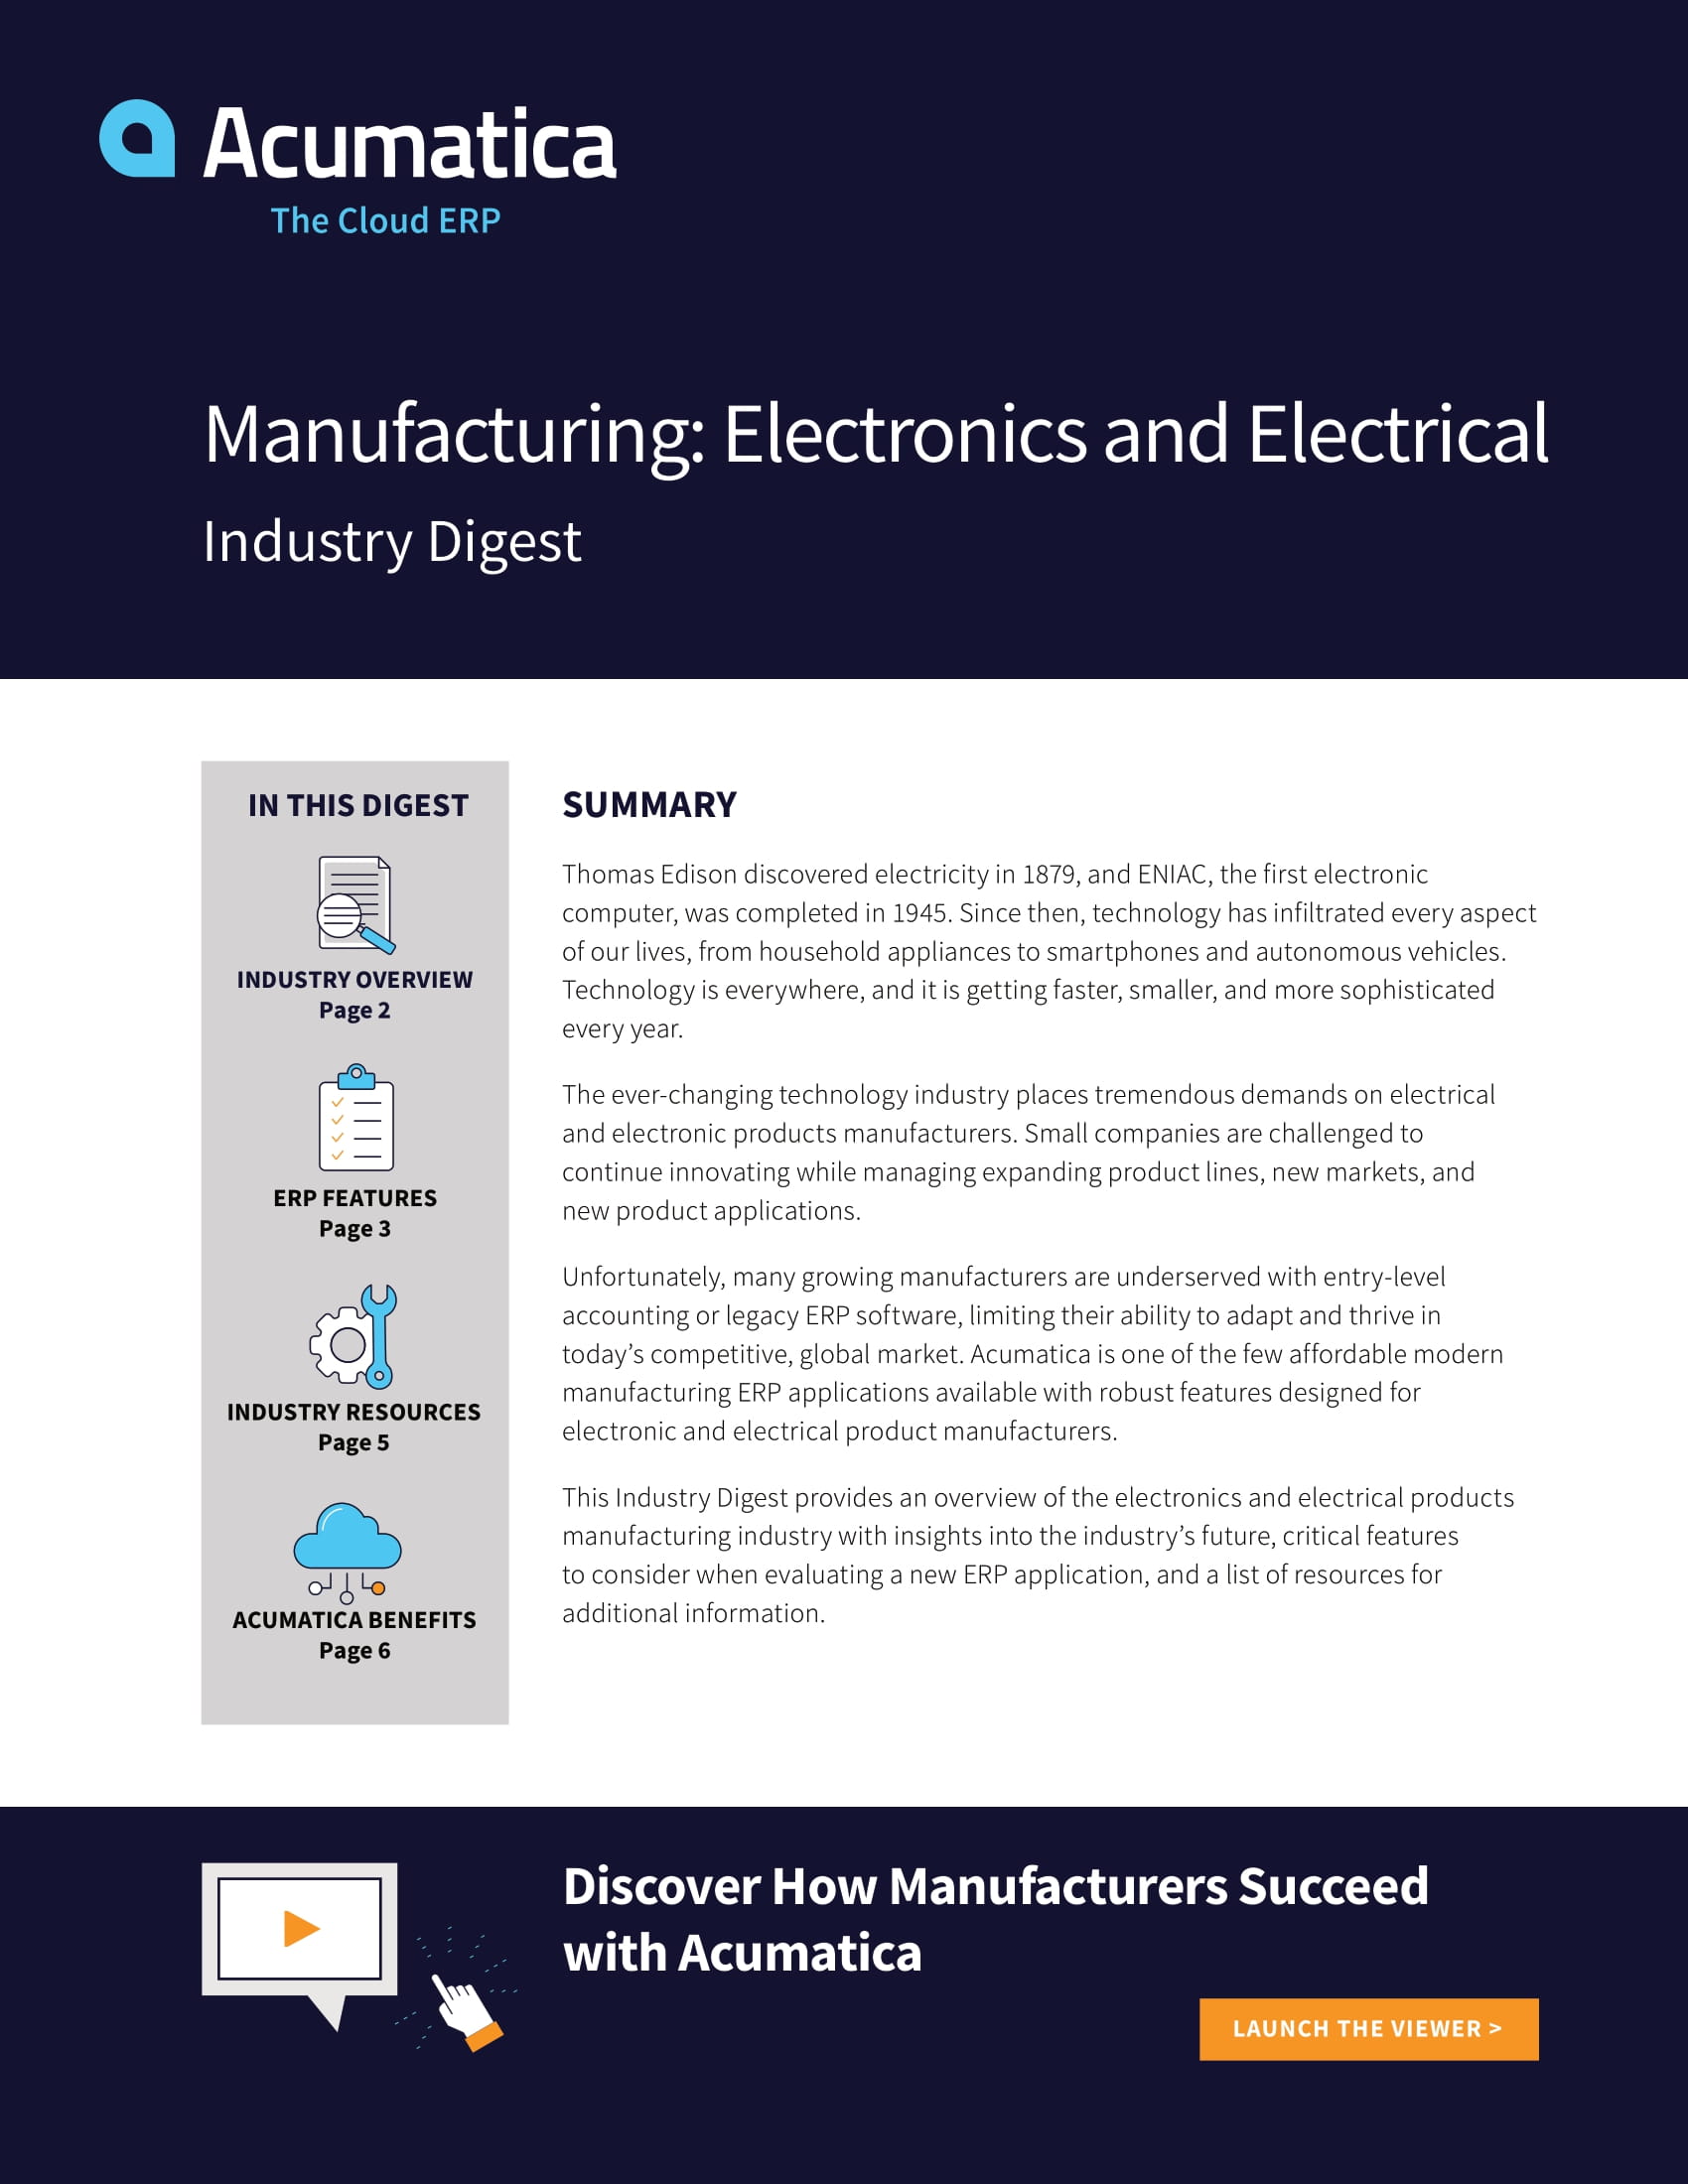 Acumatica Cloud ERP : un succès pour les fabricants de produits électroniques et électriques 